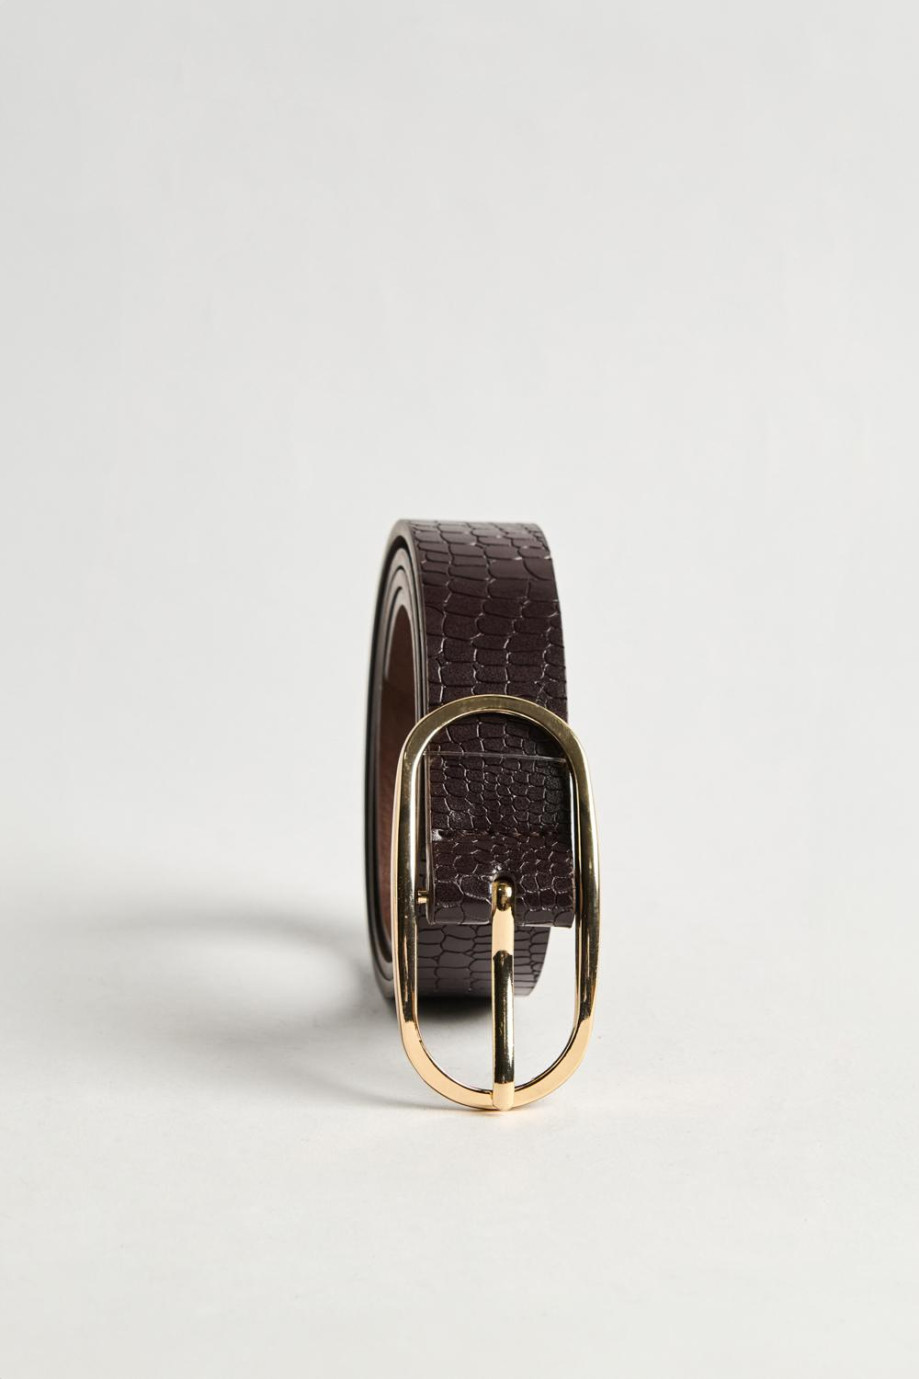 Cinturón café oscuro con texturas y hebilla ovalada dorada